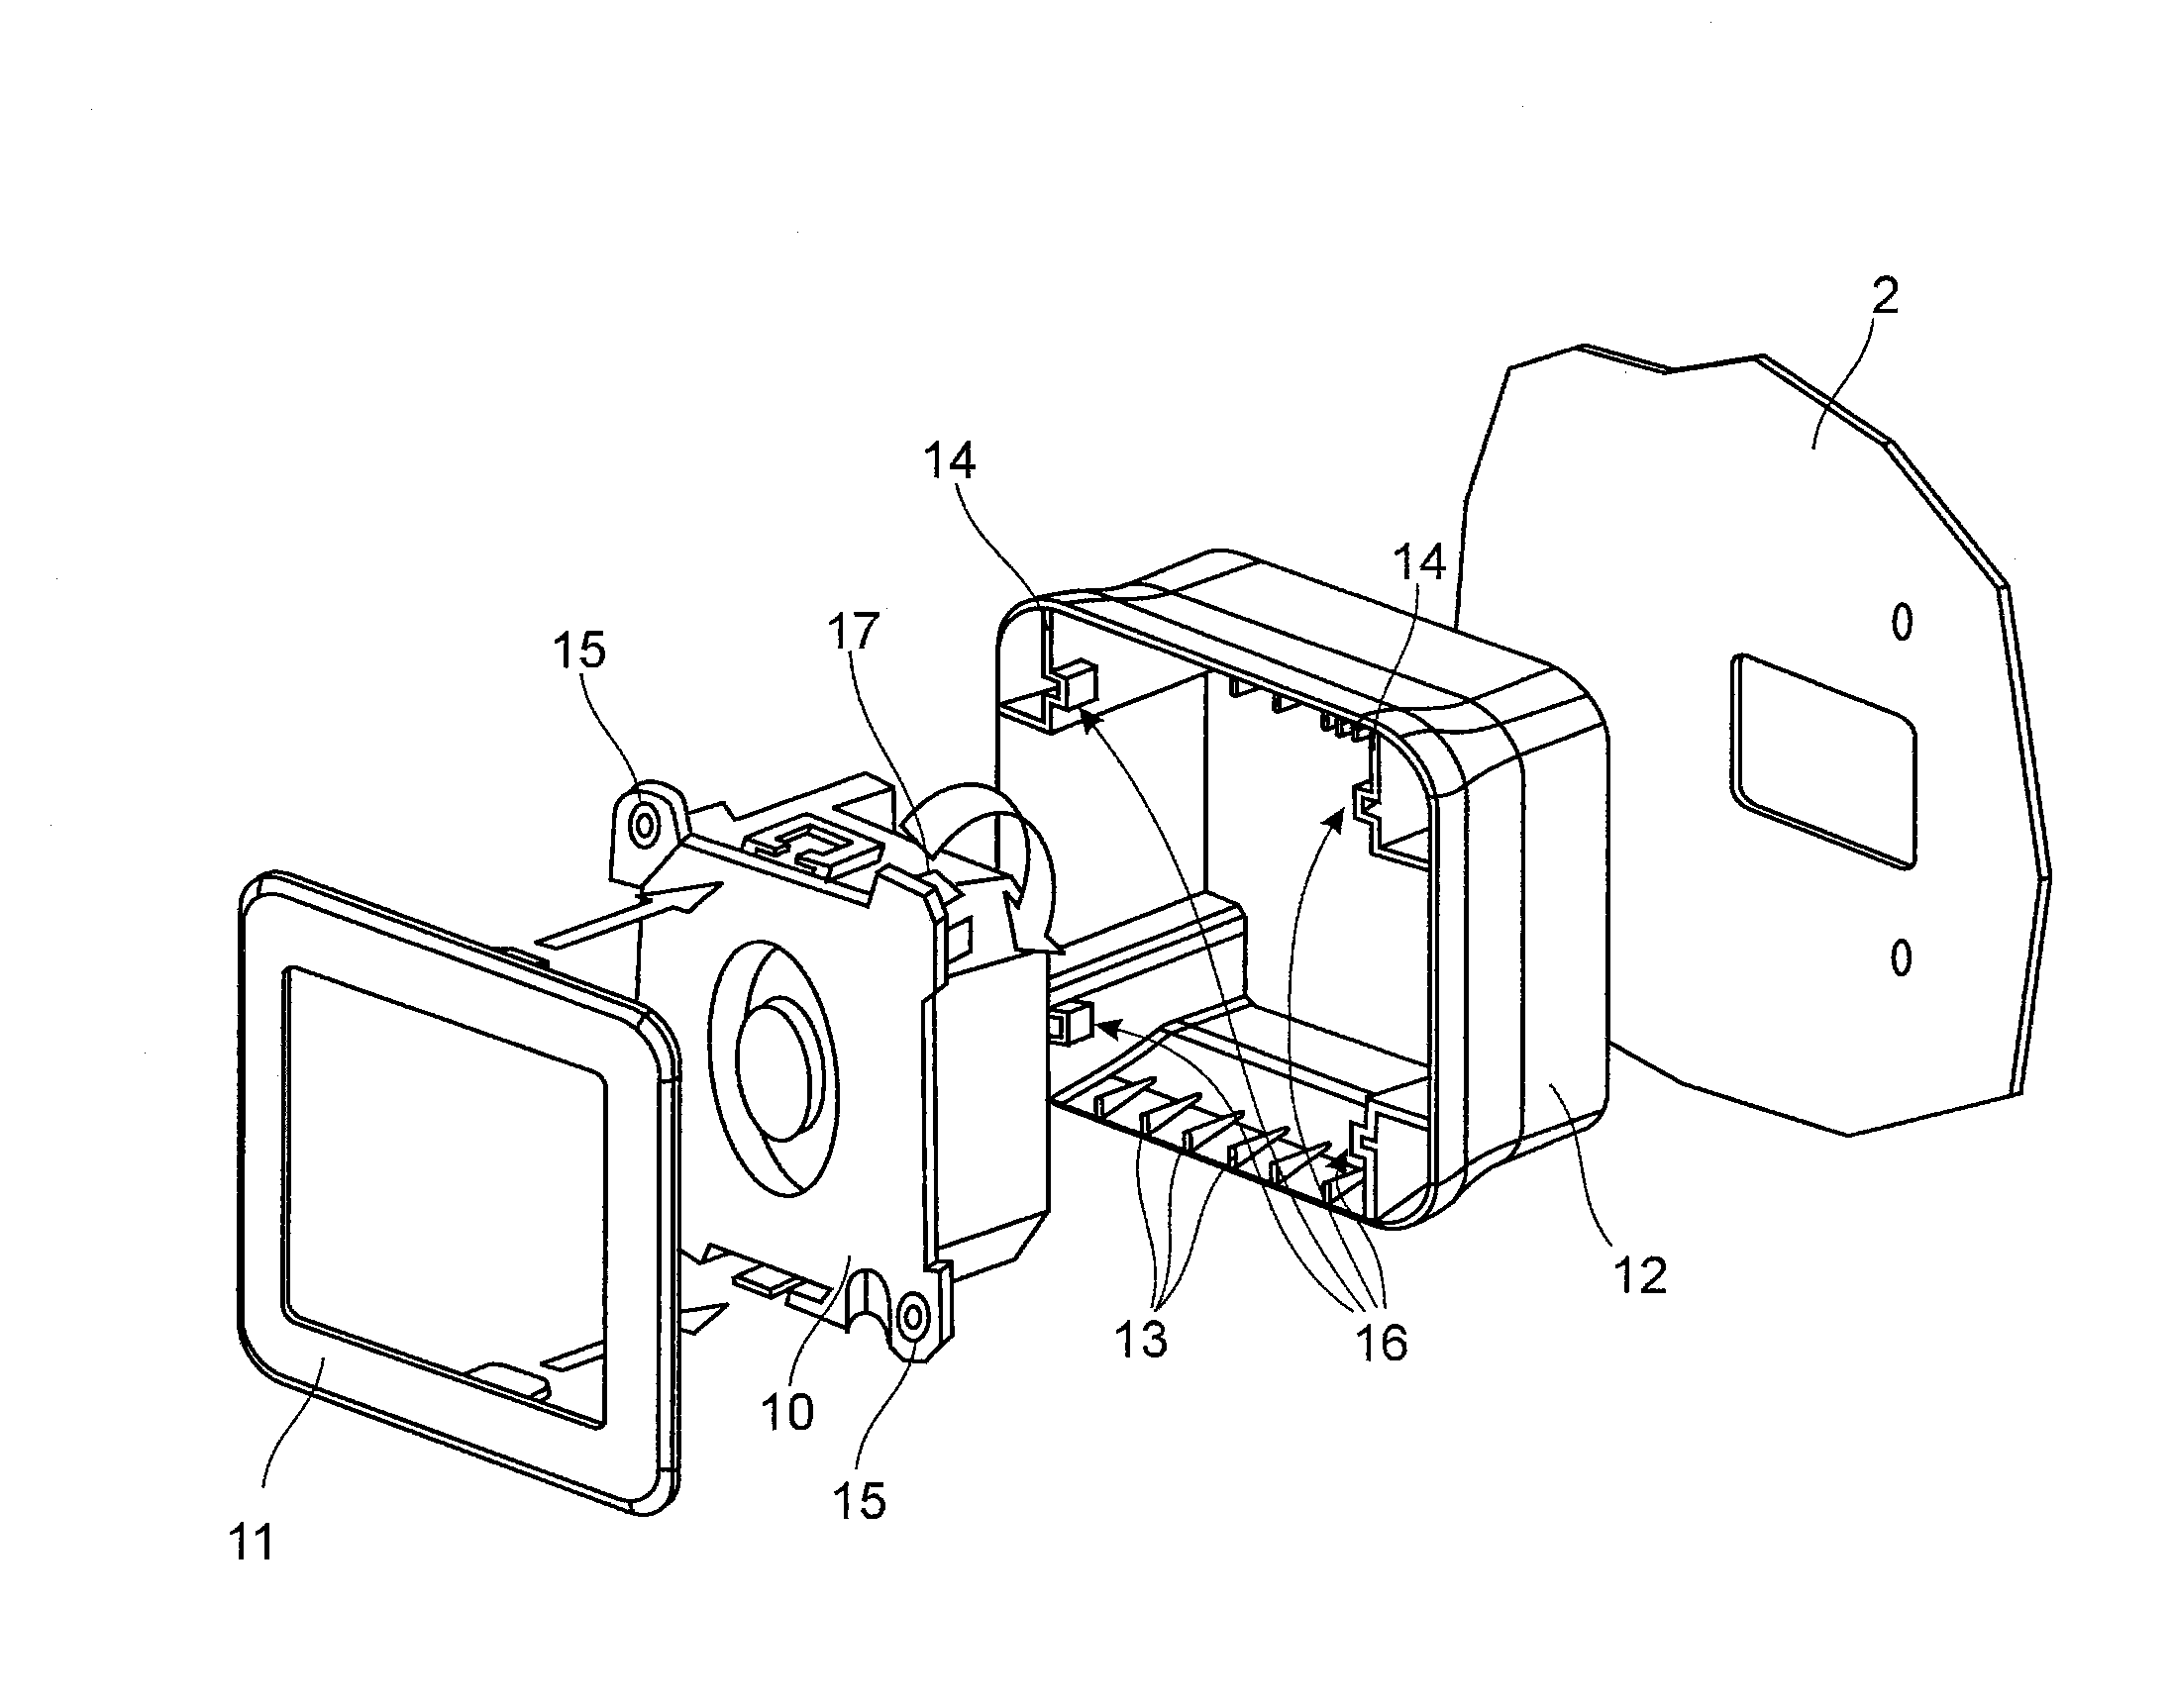 Modular installation concept for a camera